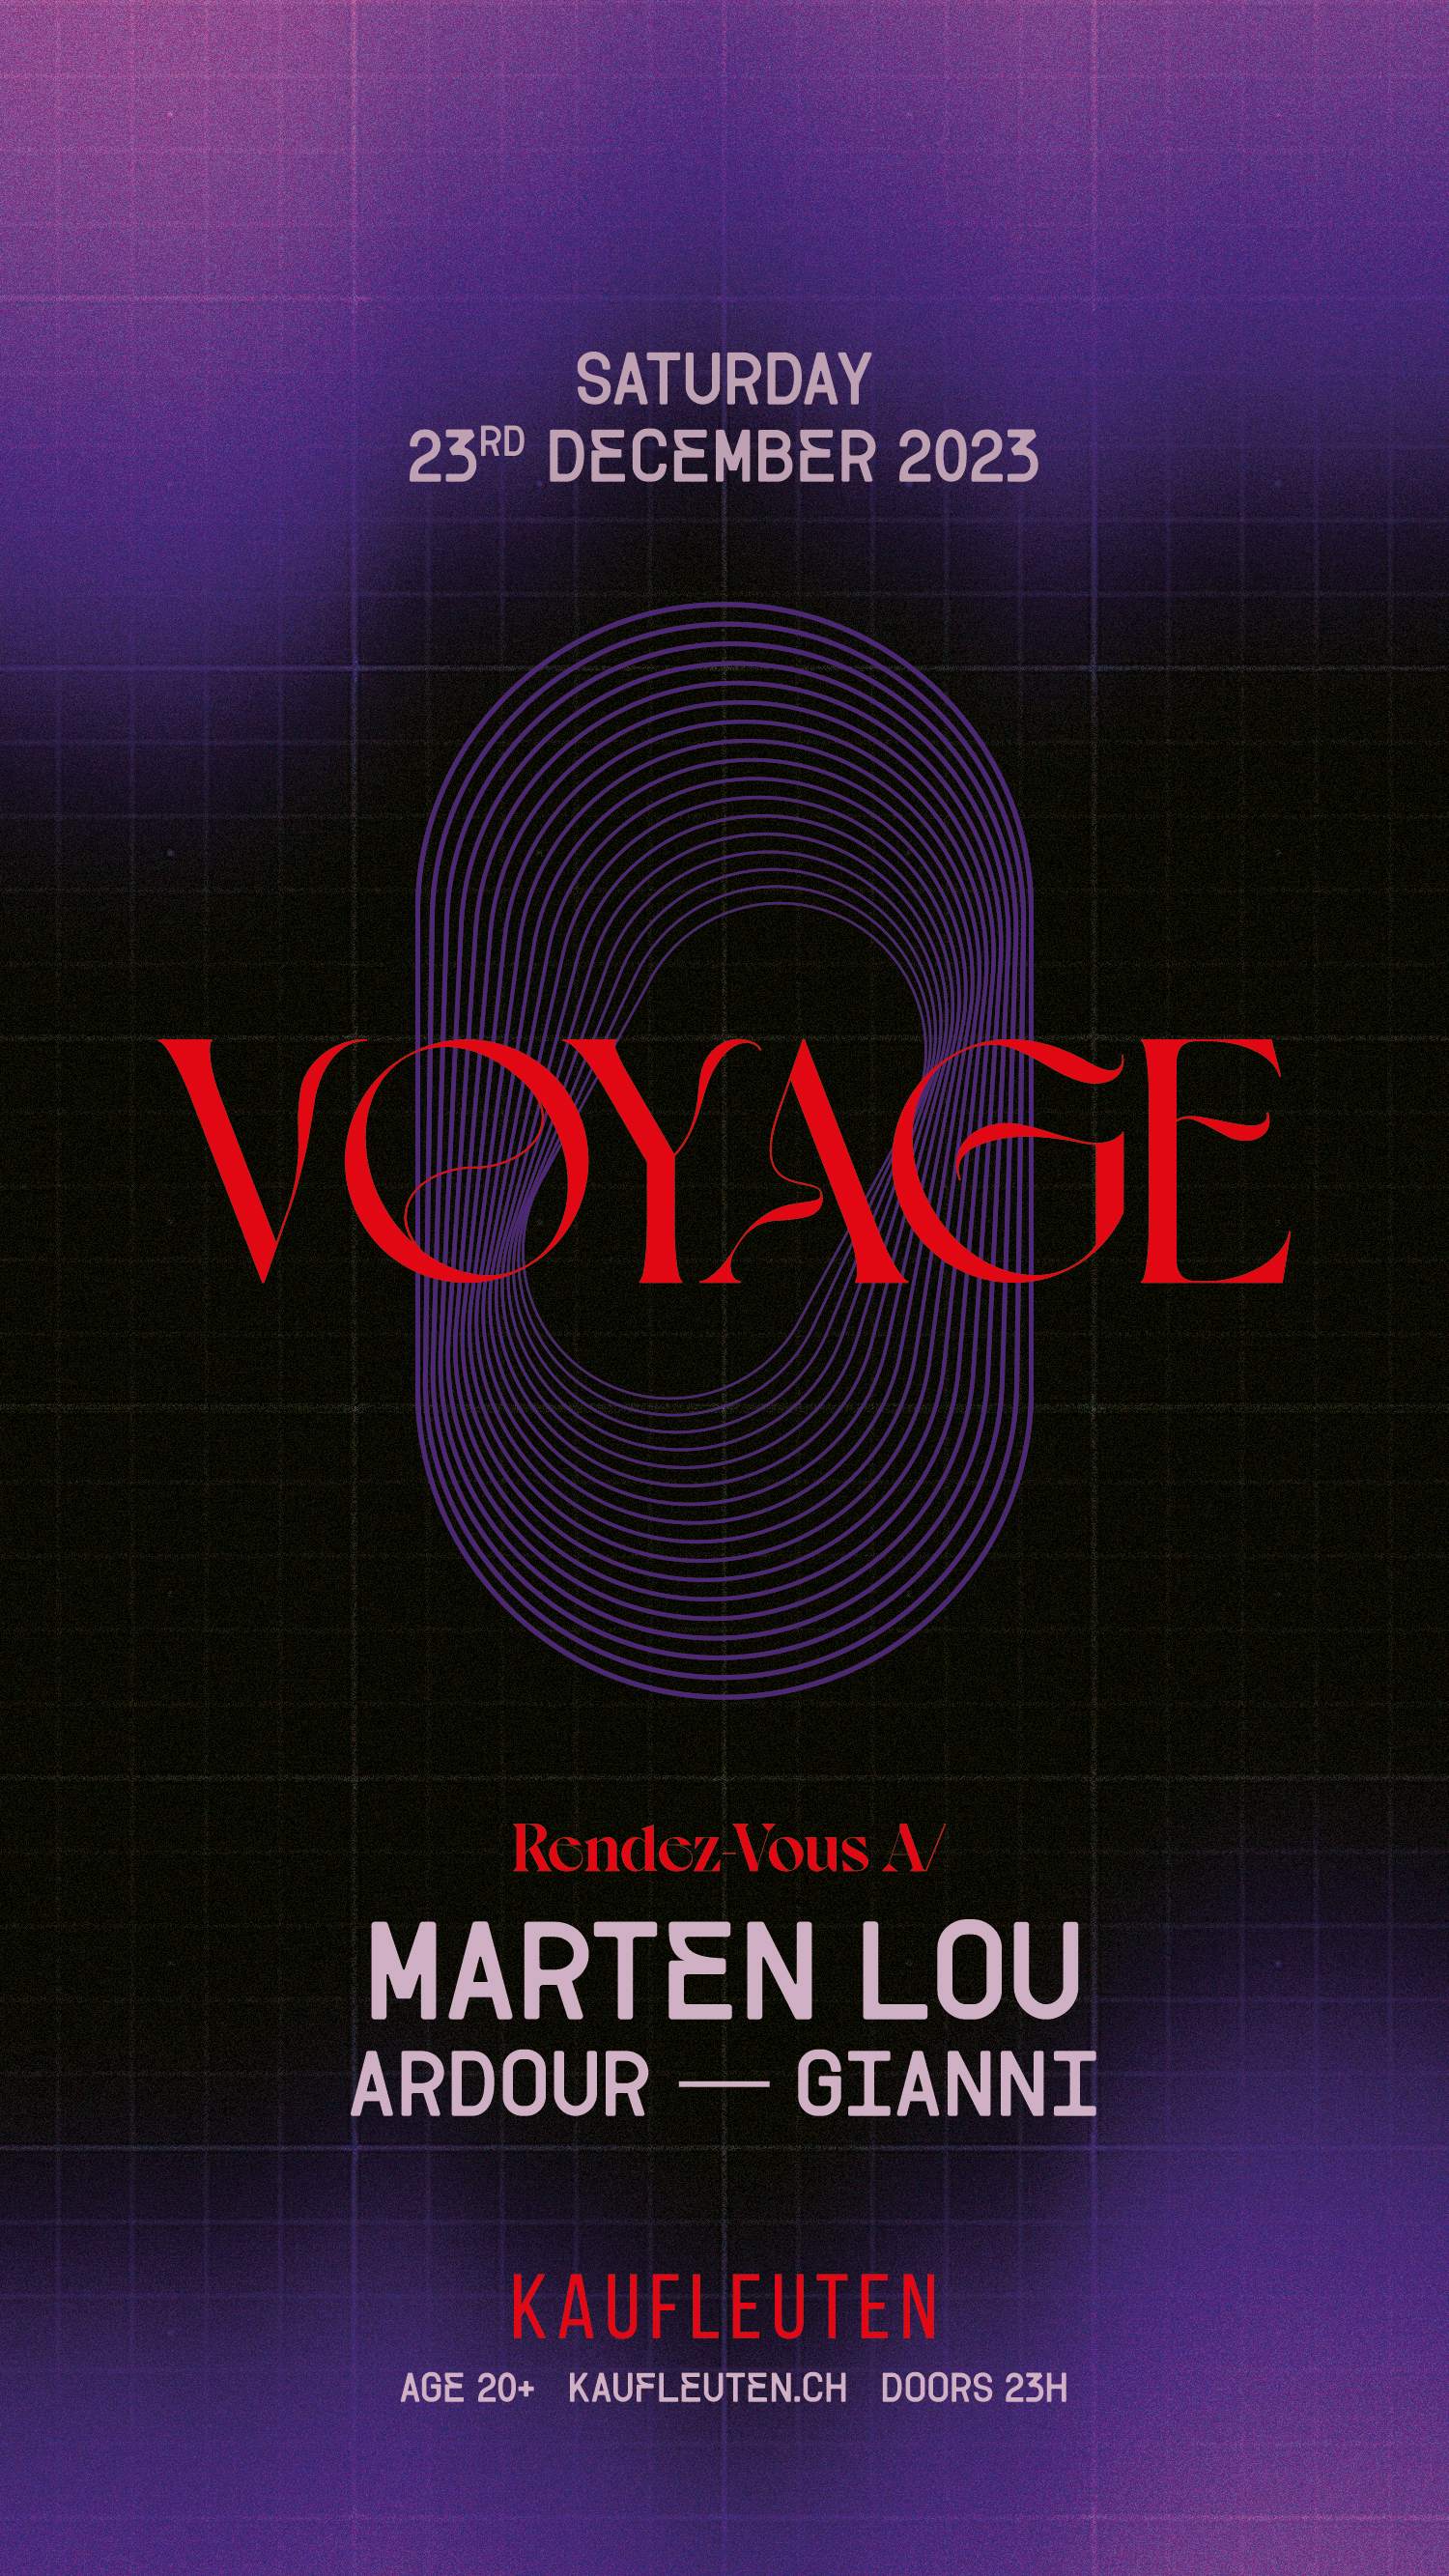 Voyage with Marten Lou - Página frontal